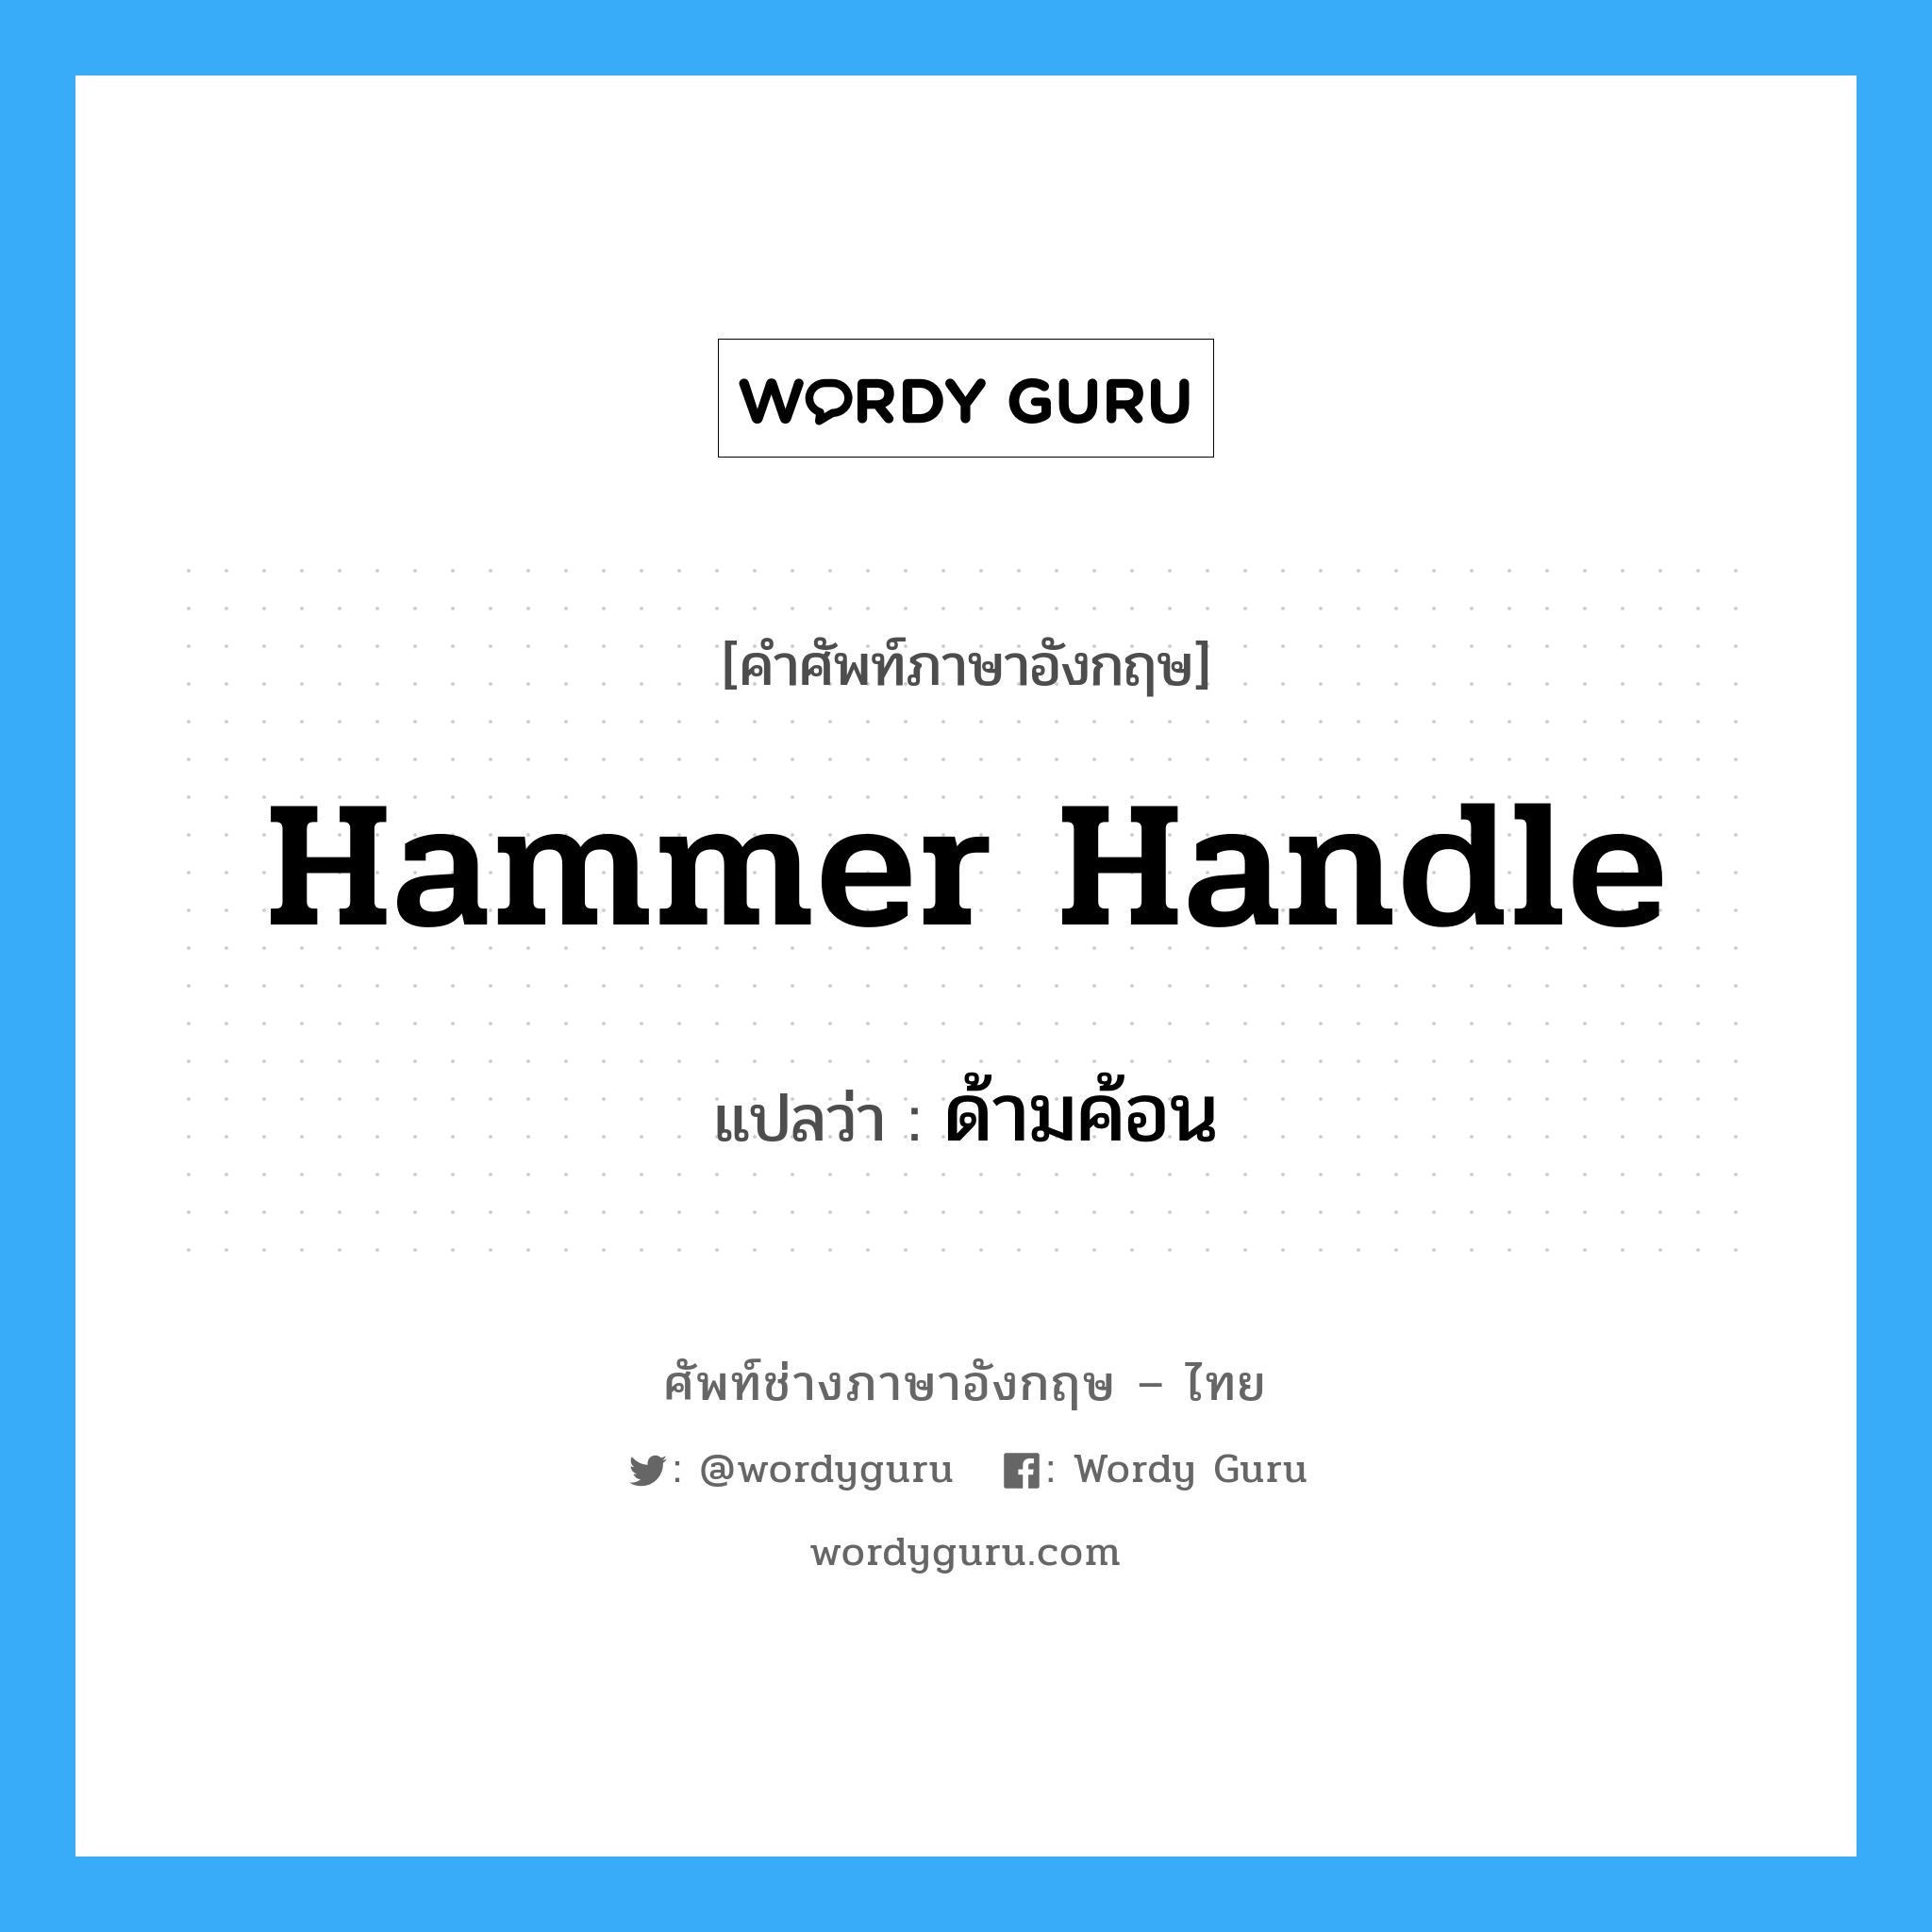 hammer handle แปลว่า?, คำศัพท์ช่างภาษาอังกฤษ - ไทย hammer handle คำศัพท์ภาษาอังกฤษ hammer handle แปลว่า ด้ามค้อน